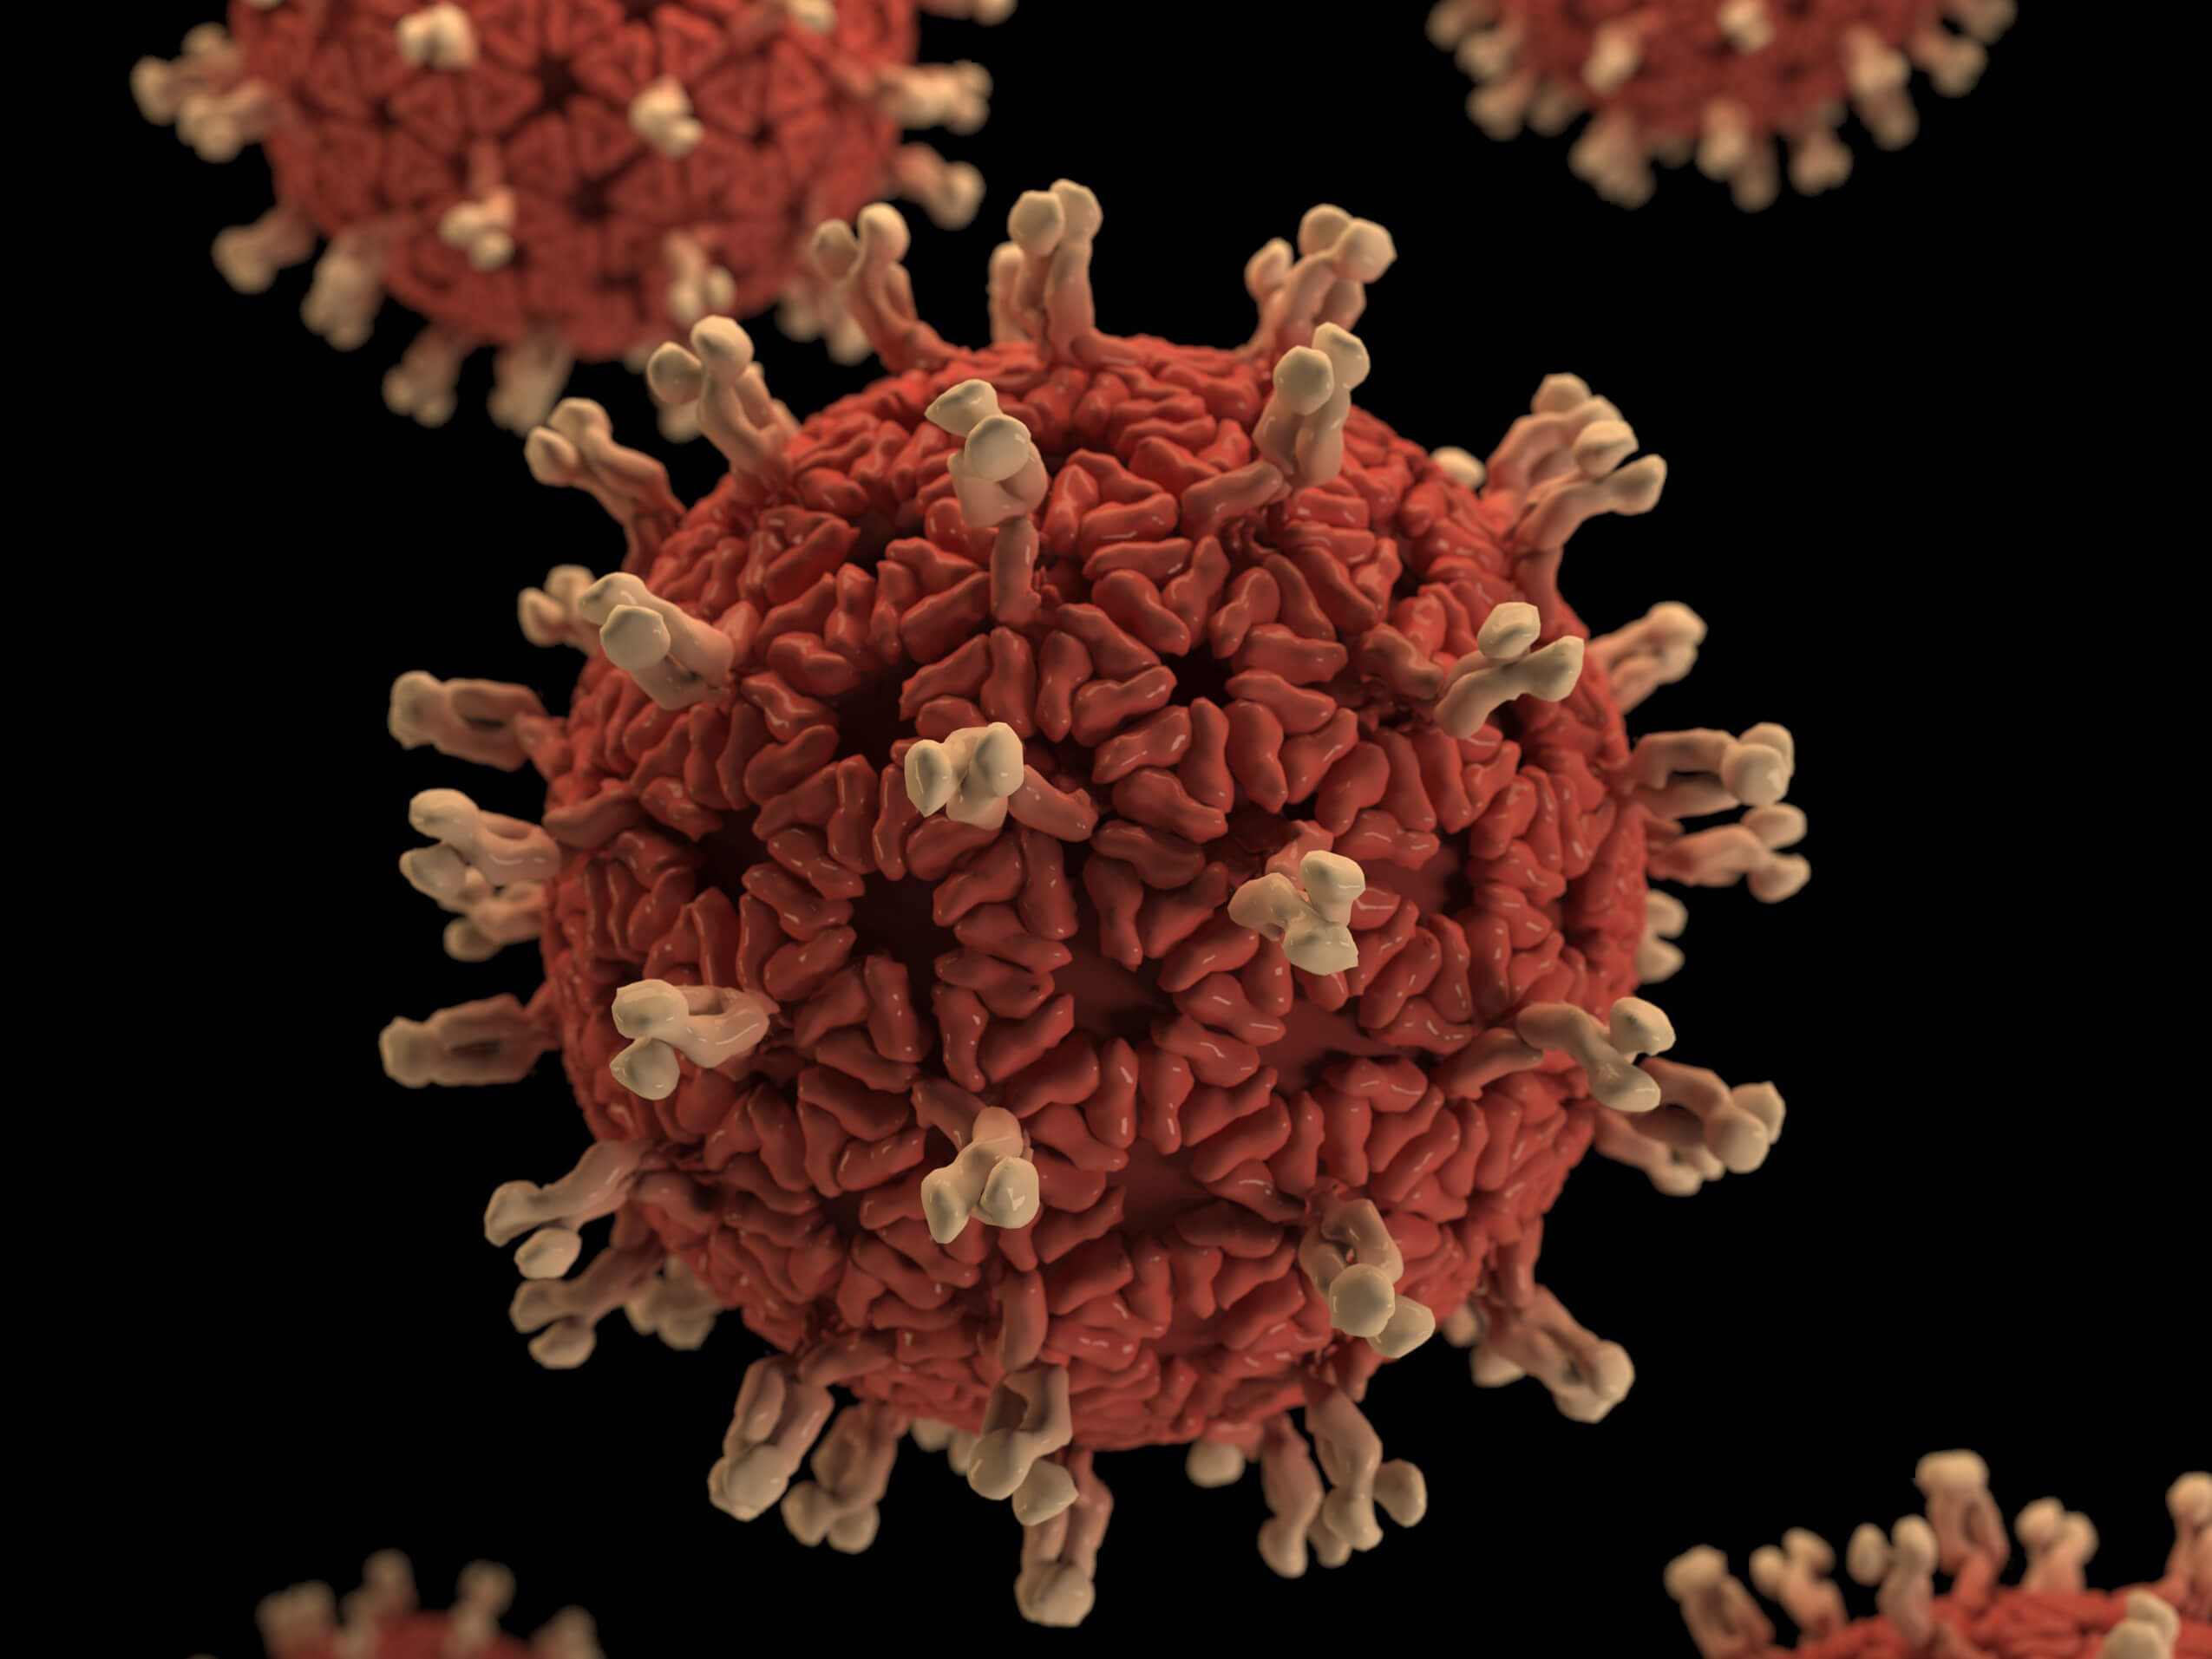 Ausweitung der Tests auf Coronavirus - Praxisposter in mehreren Sprachen